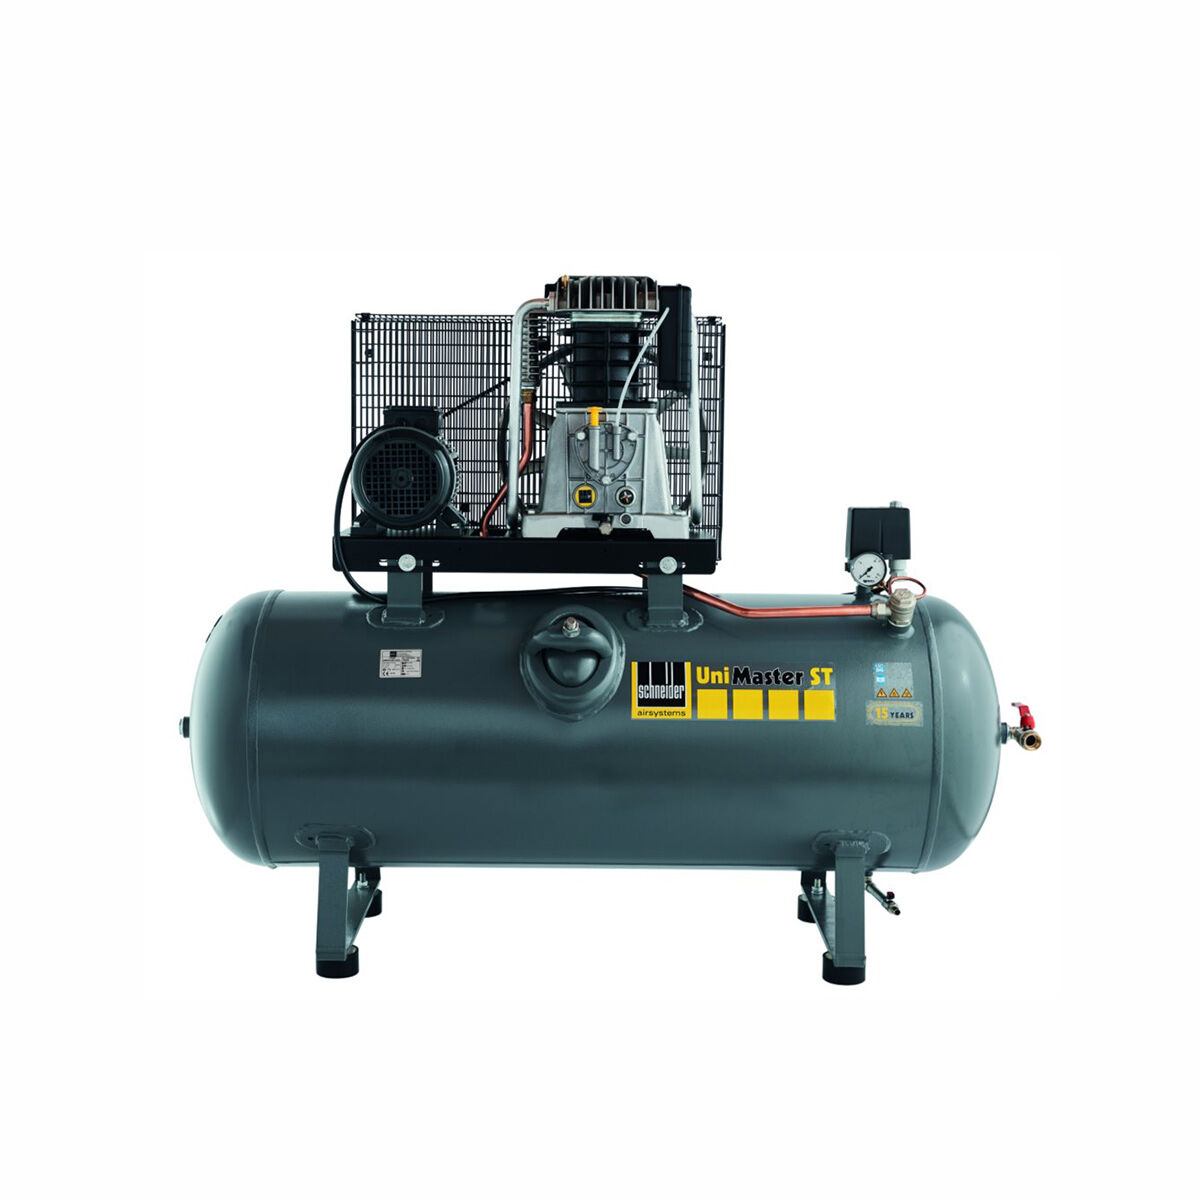 Schneider-Kompressor UNM STL 780-15-500 C 1121580522